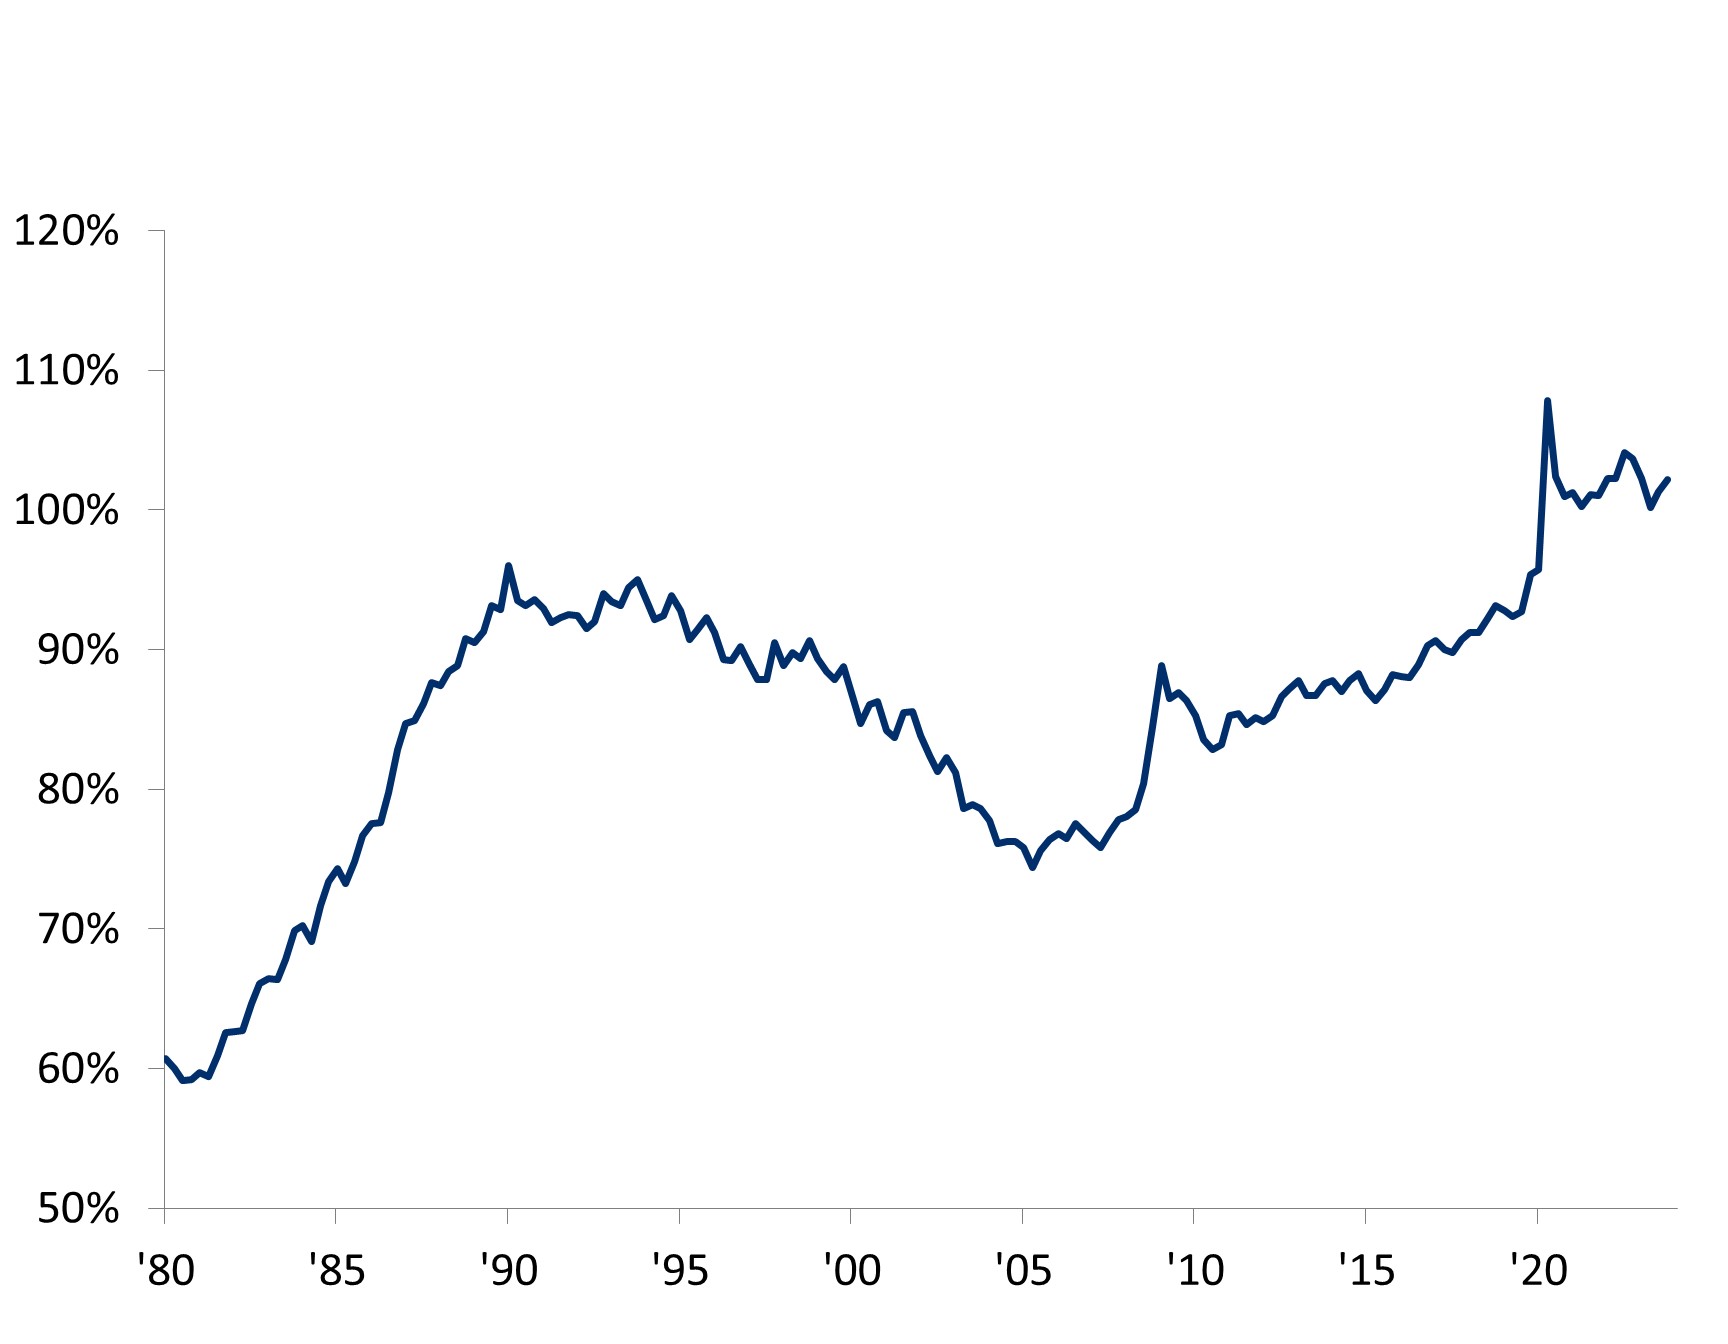 O gráfico de linhas representa os empréstimos bancários do Japão como uma porcentagem do PIB de 1980 a 2023. O gráfico mostra um padrão de crescimento inicial em 1980, quando os empréstimos bancários do Japão como uma porcentagem do PIB aumentaram constantemente de 60% em 1980 para 96% em 1990. No entanto, essa trajetória ascendente foi seguida por um declínio gradual, conforme os empréstimos bancários como uma porcentagem do PIB caíram de 96% em 1990 para 74% em 2005. Após a queda, a métrica aumentou de 74% em 2005 para atingir o seu nível mais alto de 107% em 2020. Desde então, houve uma leve queda, para 102% em 2023, mantendo-se significativamente elevada, o que contribui para a força sustentada na demanda agregada.